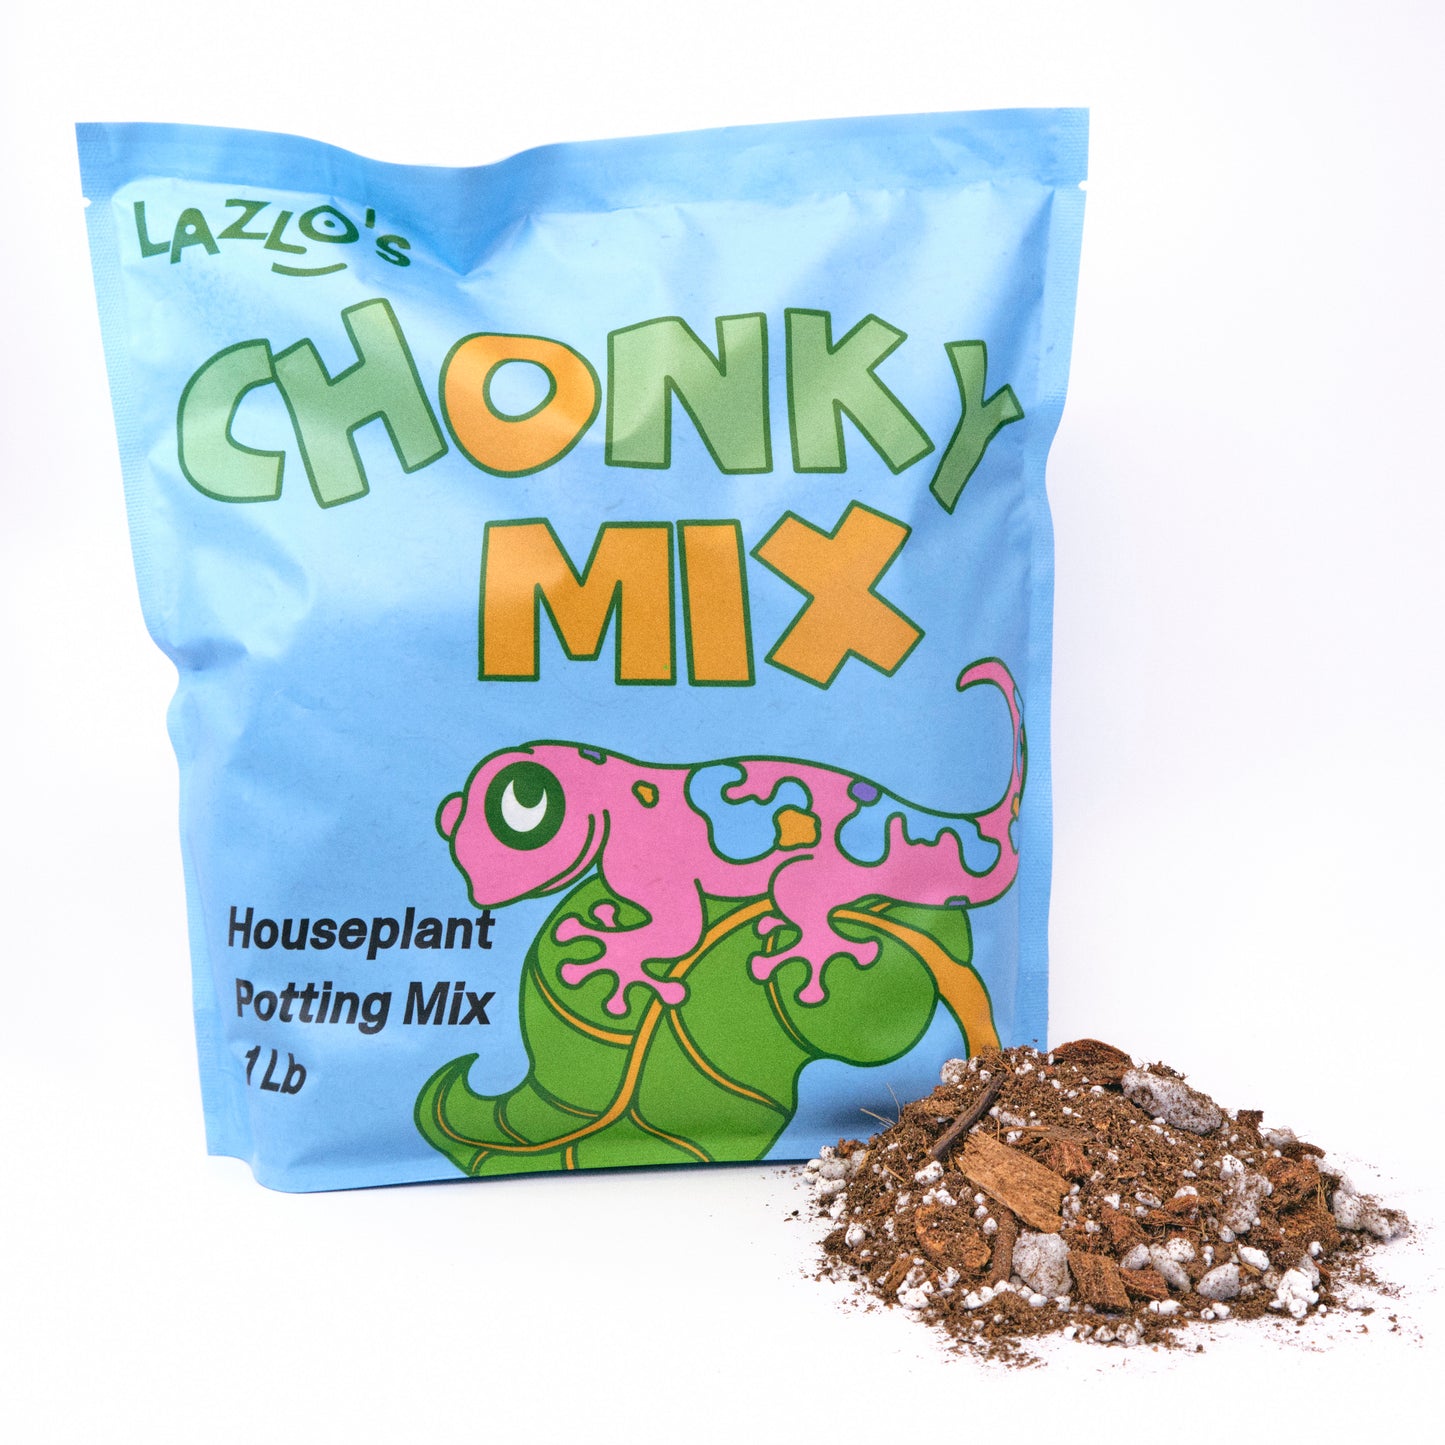 Chonky Mix